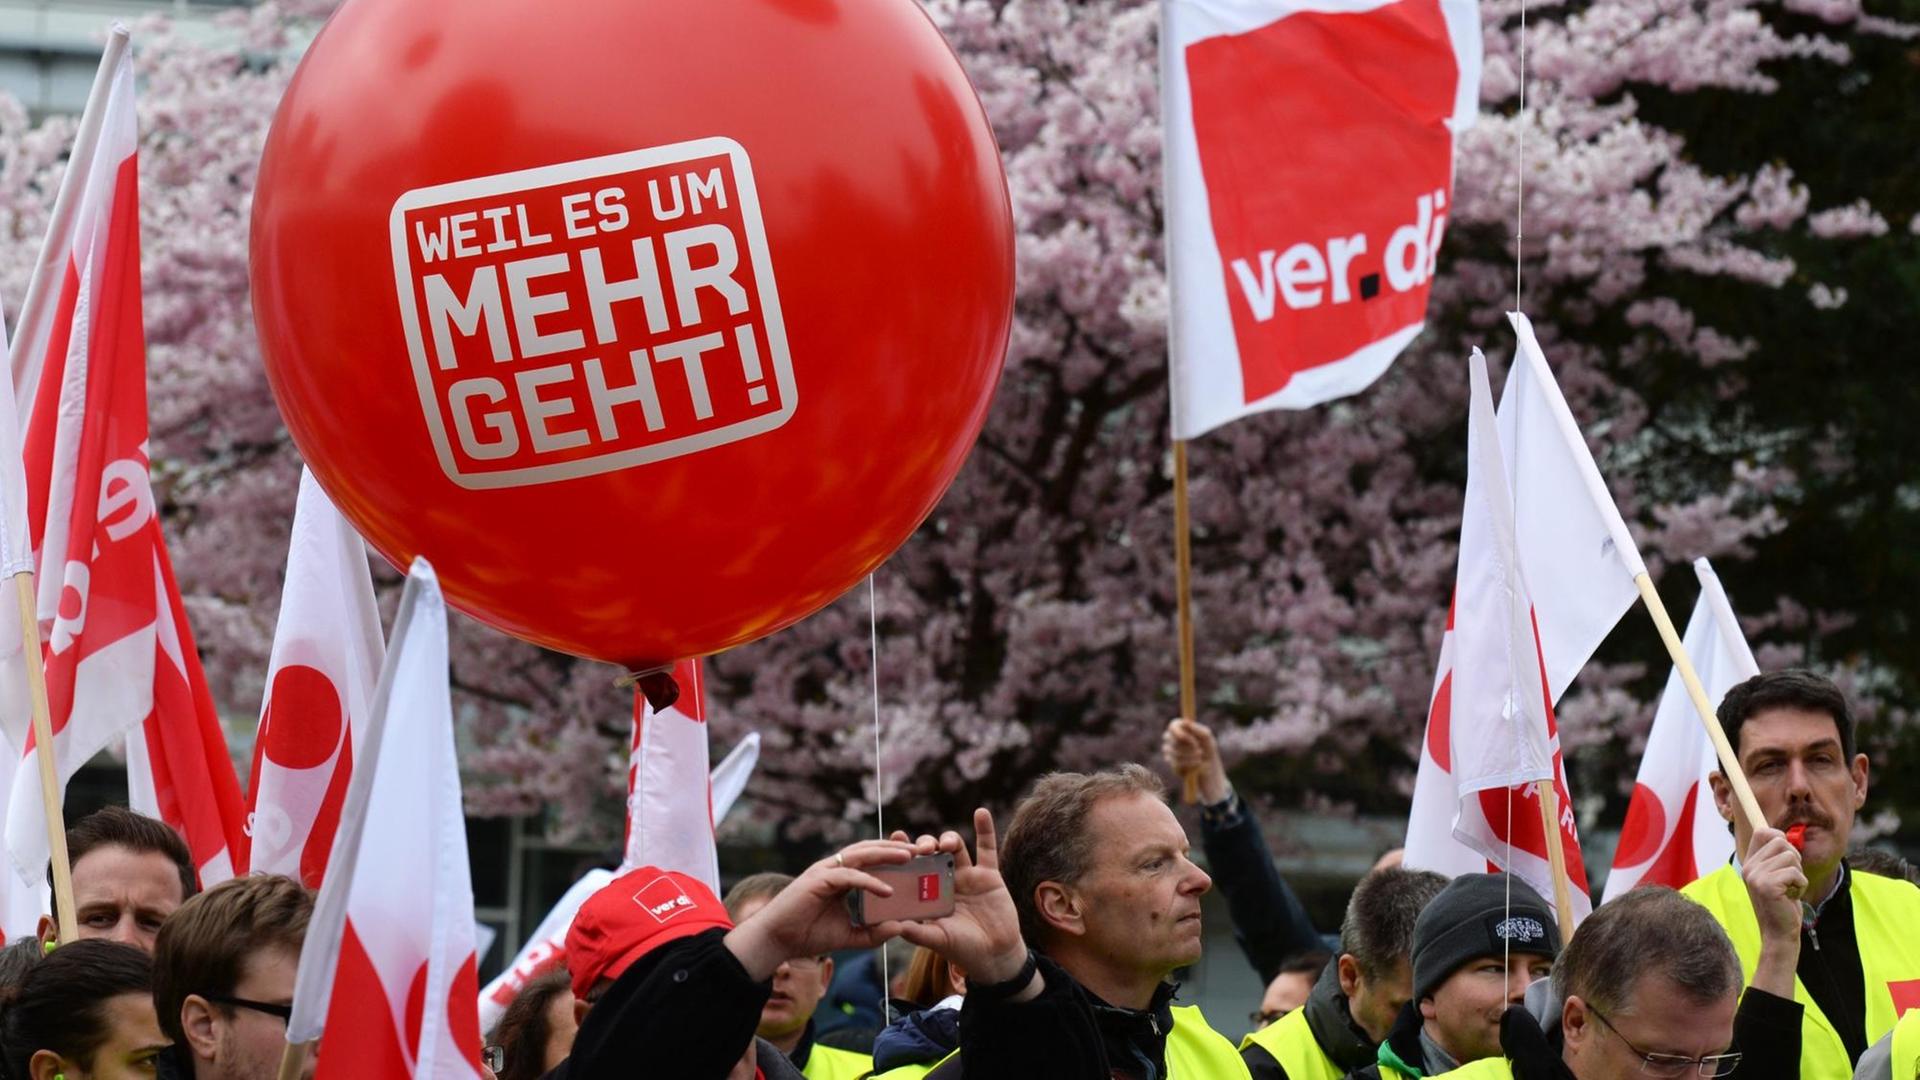 Demonstranten halten einen großen roten Luftballon mit dem Slogan "Weil es um mehr geht"